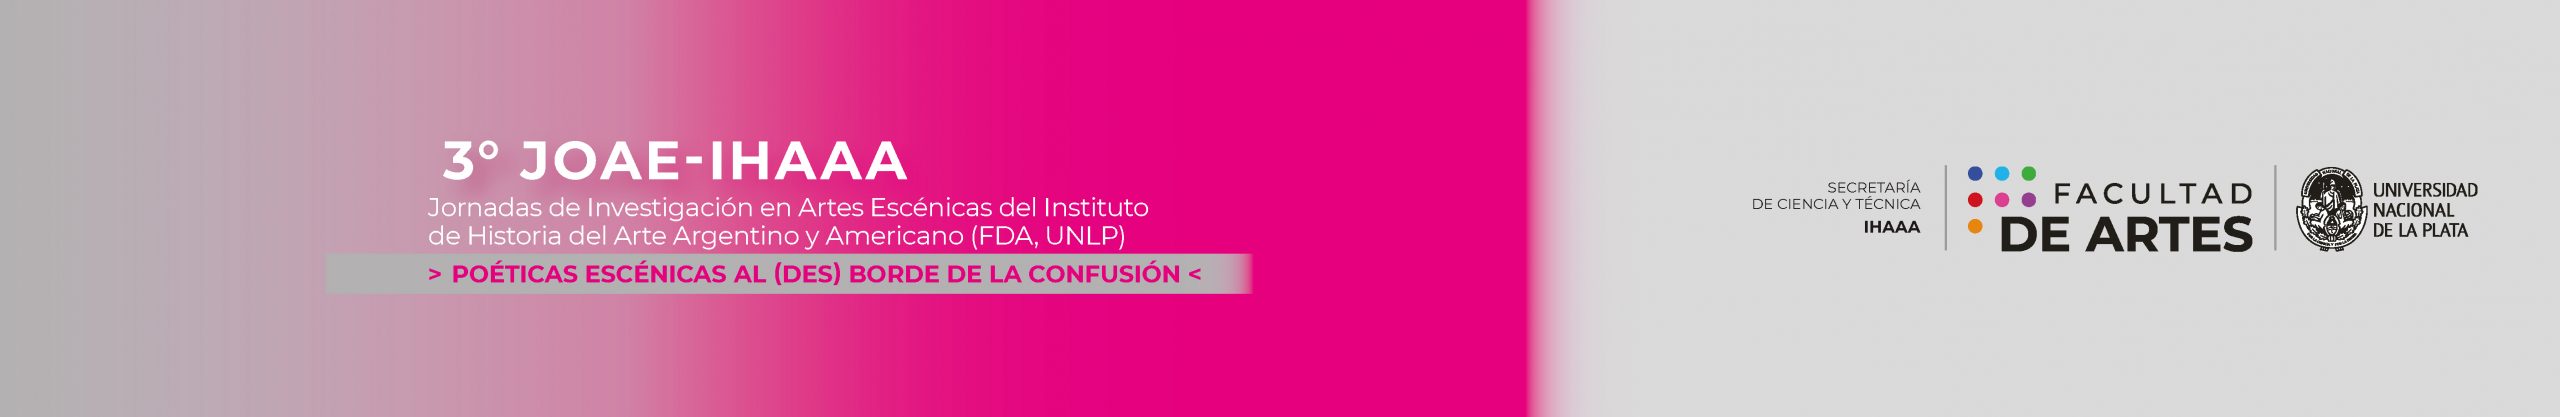 3° Jornadas de Investigación en Artes Escénicas del Instituto de Historia del Arte Argentino y Americano (FDA-UNLP) «Poéticas escénicas al (des)borde de la confusión» Logo